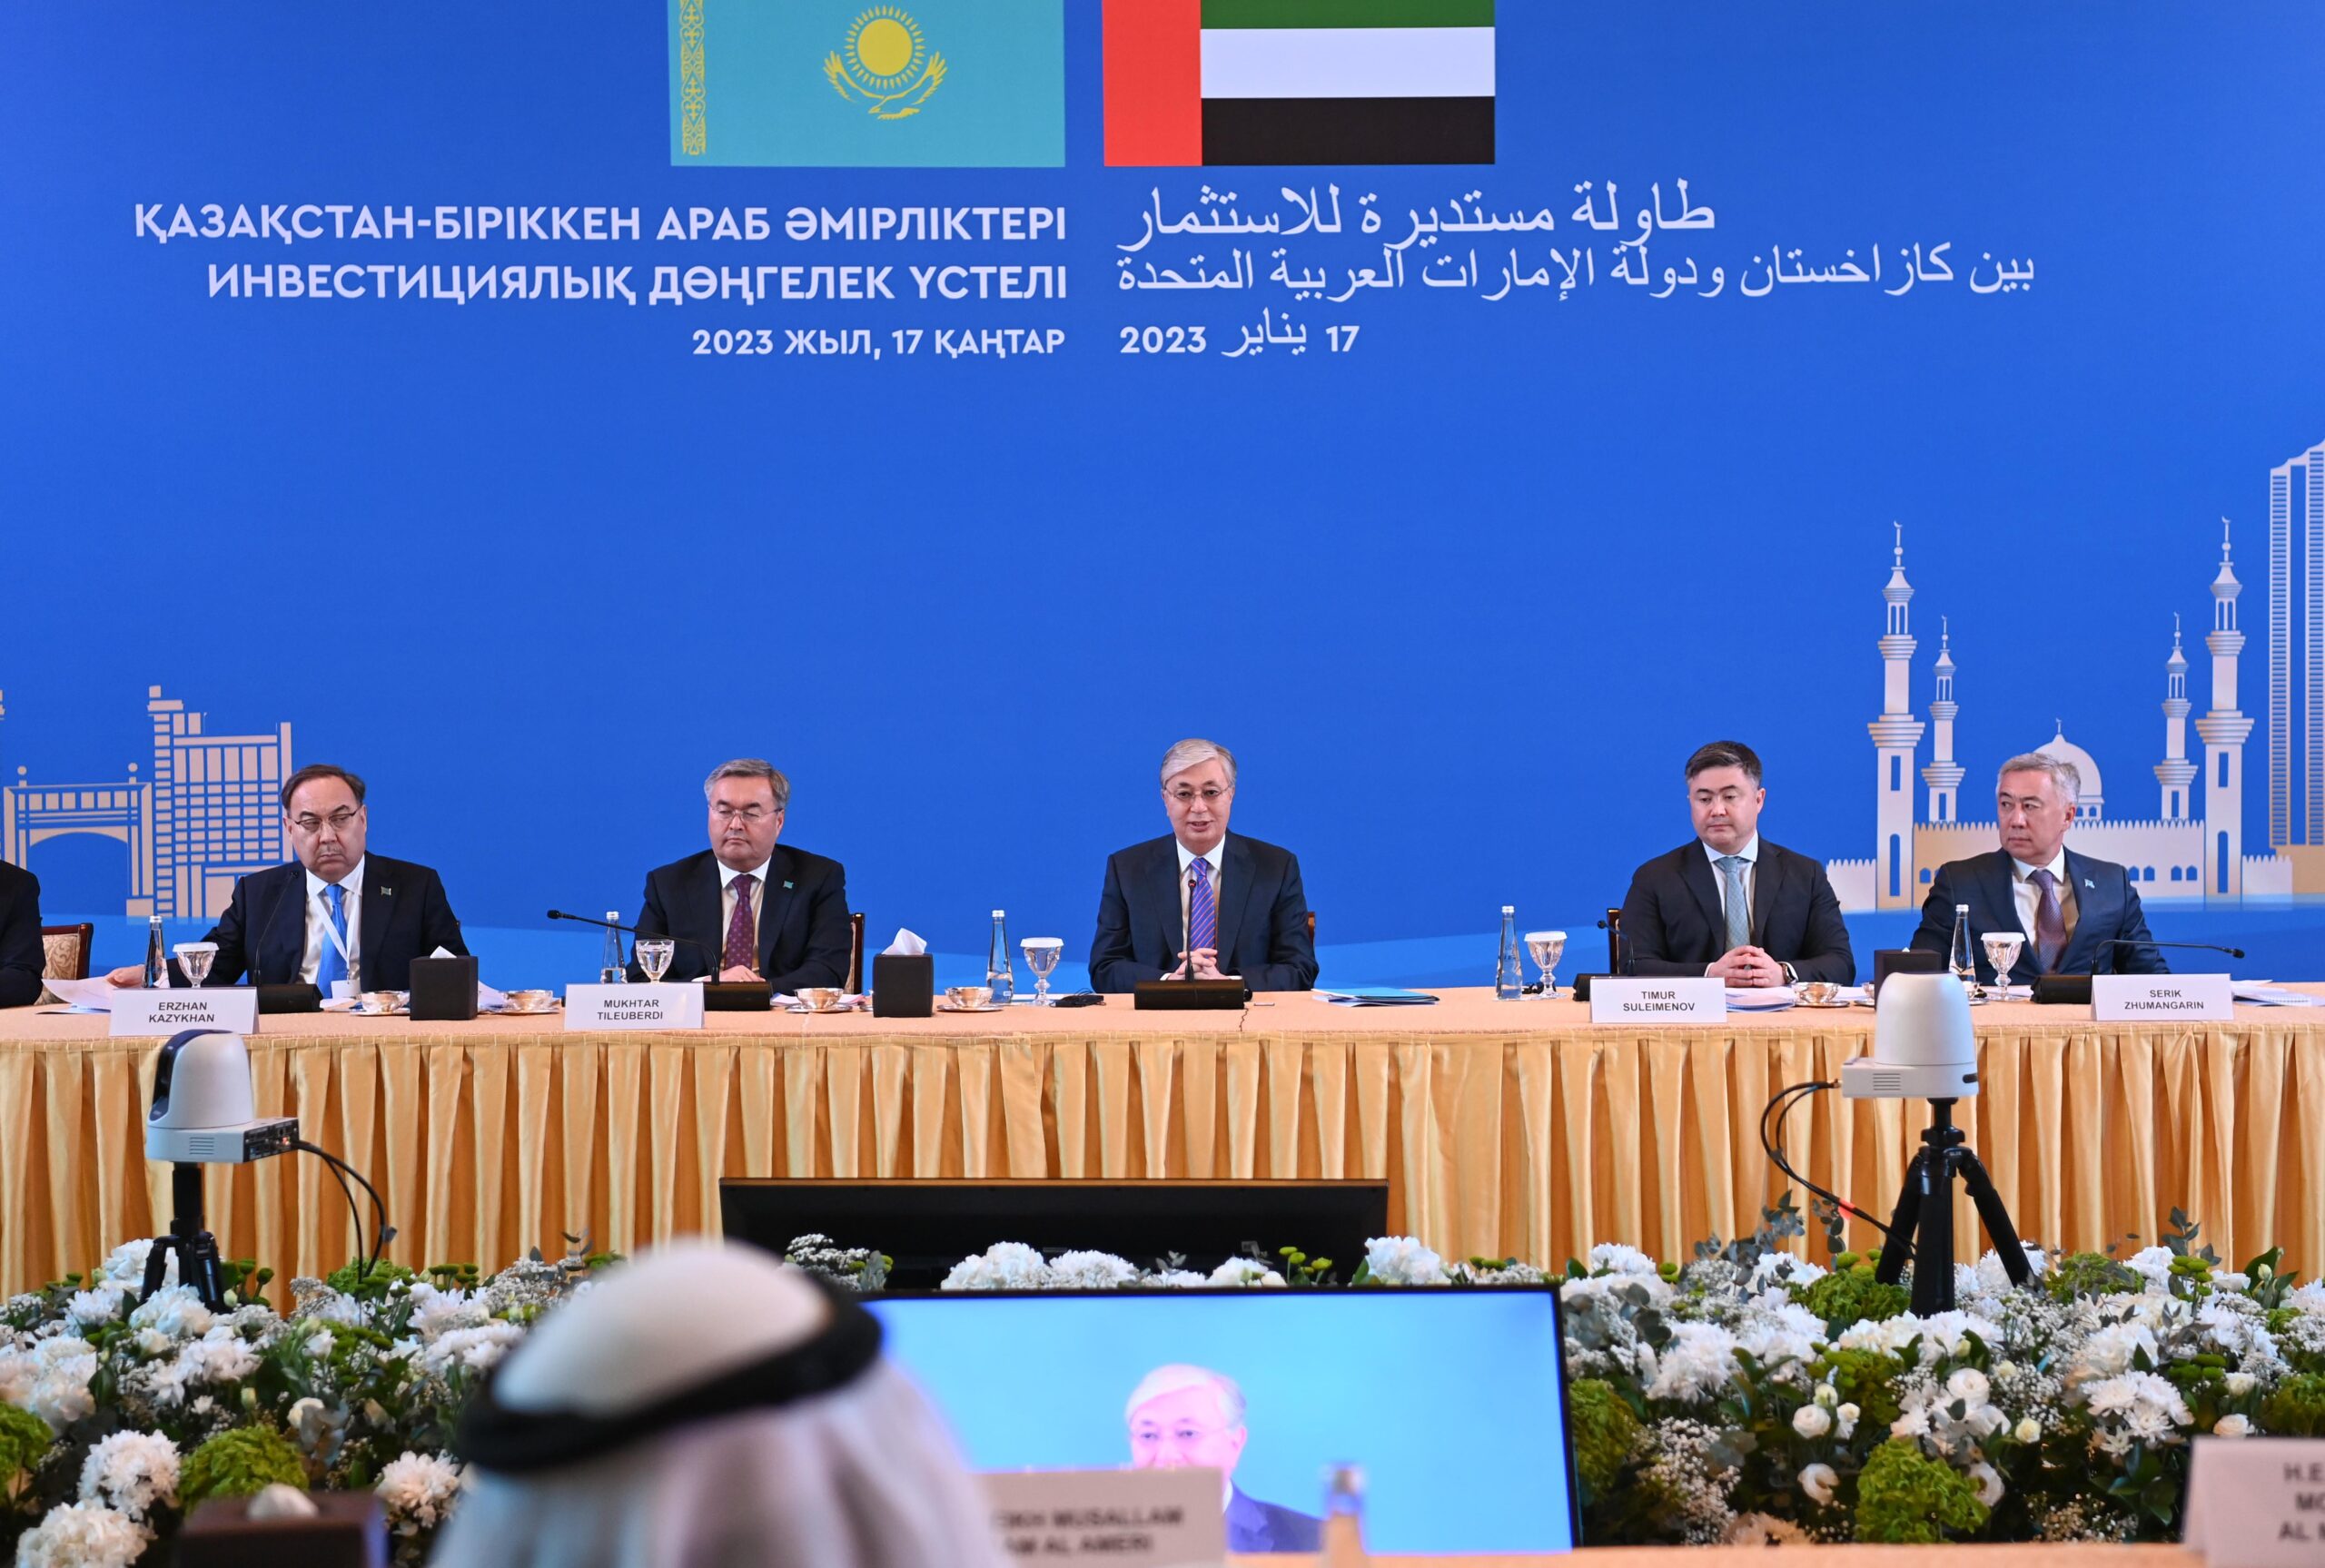 Токаев обозначил перспективные направления сотрудничества на казахстанско-эмиратском инвестиционном круглом столе - Bizmedia.kz